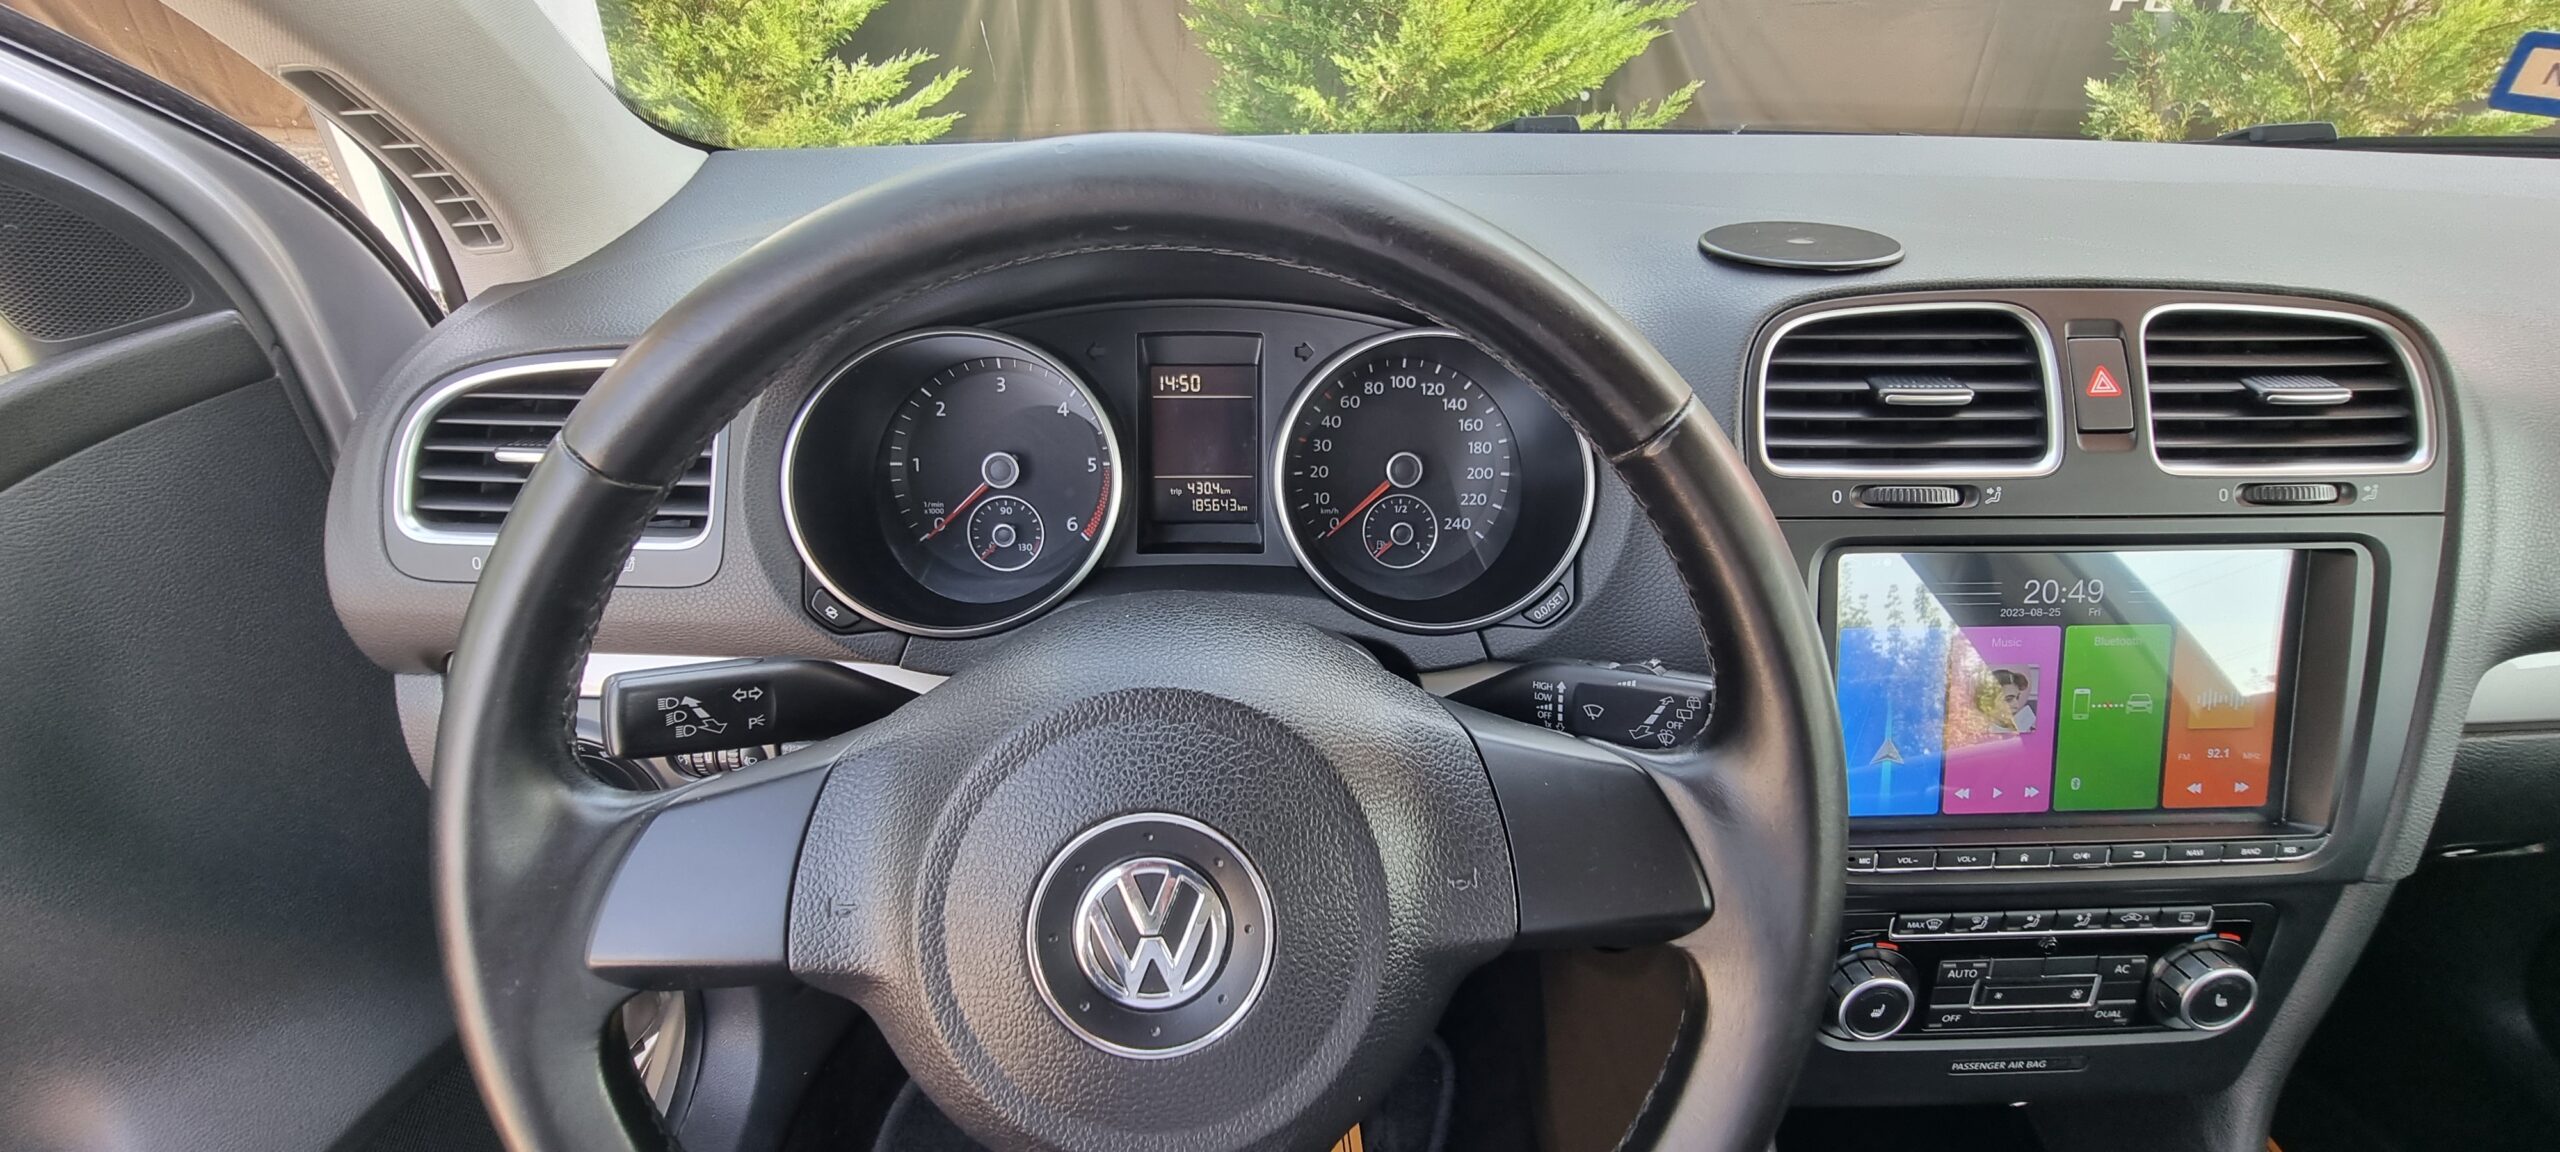 VW GOLF 1.6 TDI